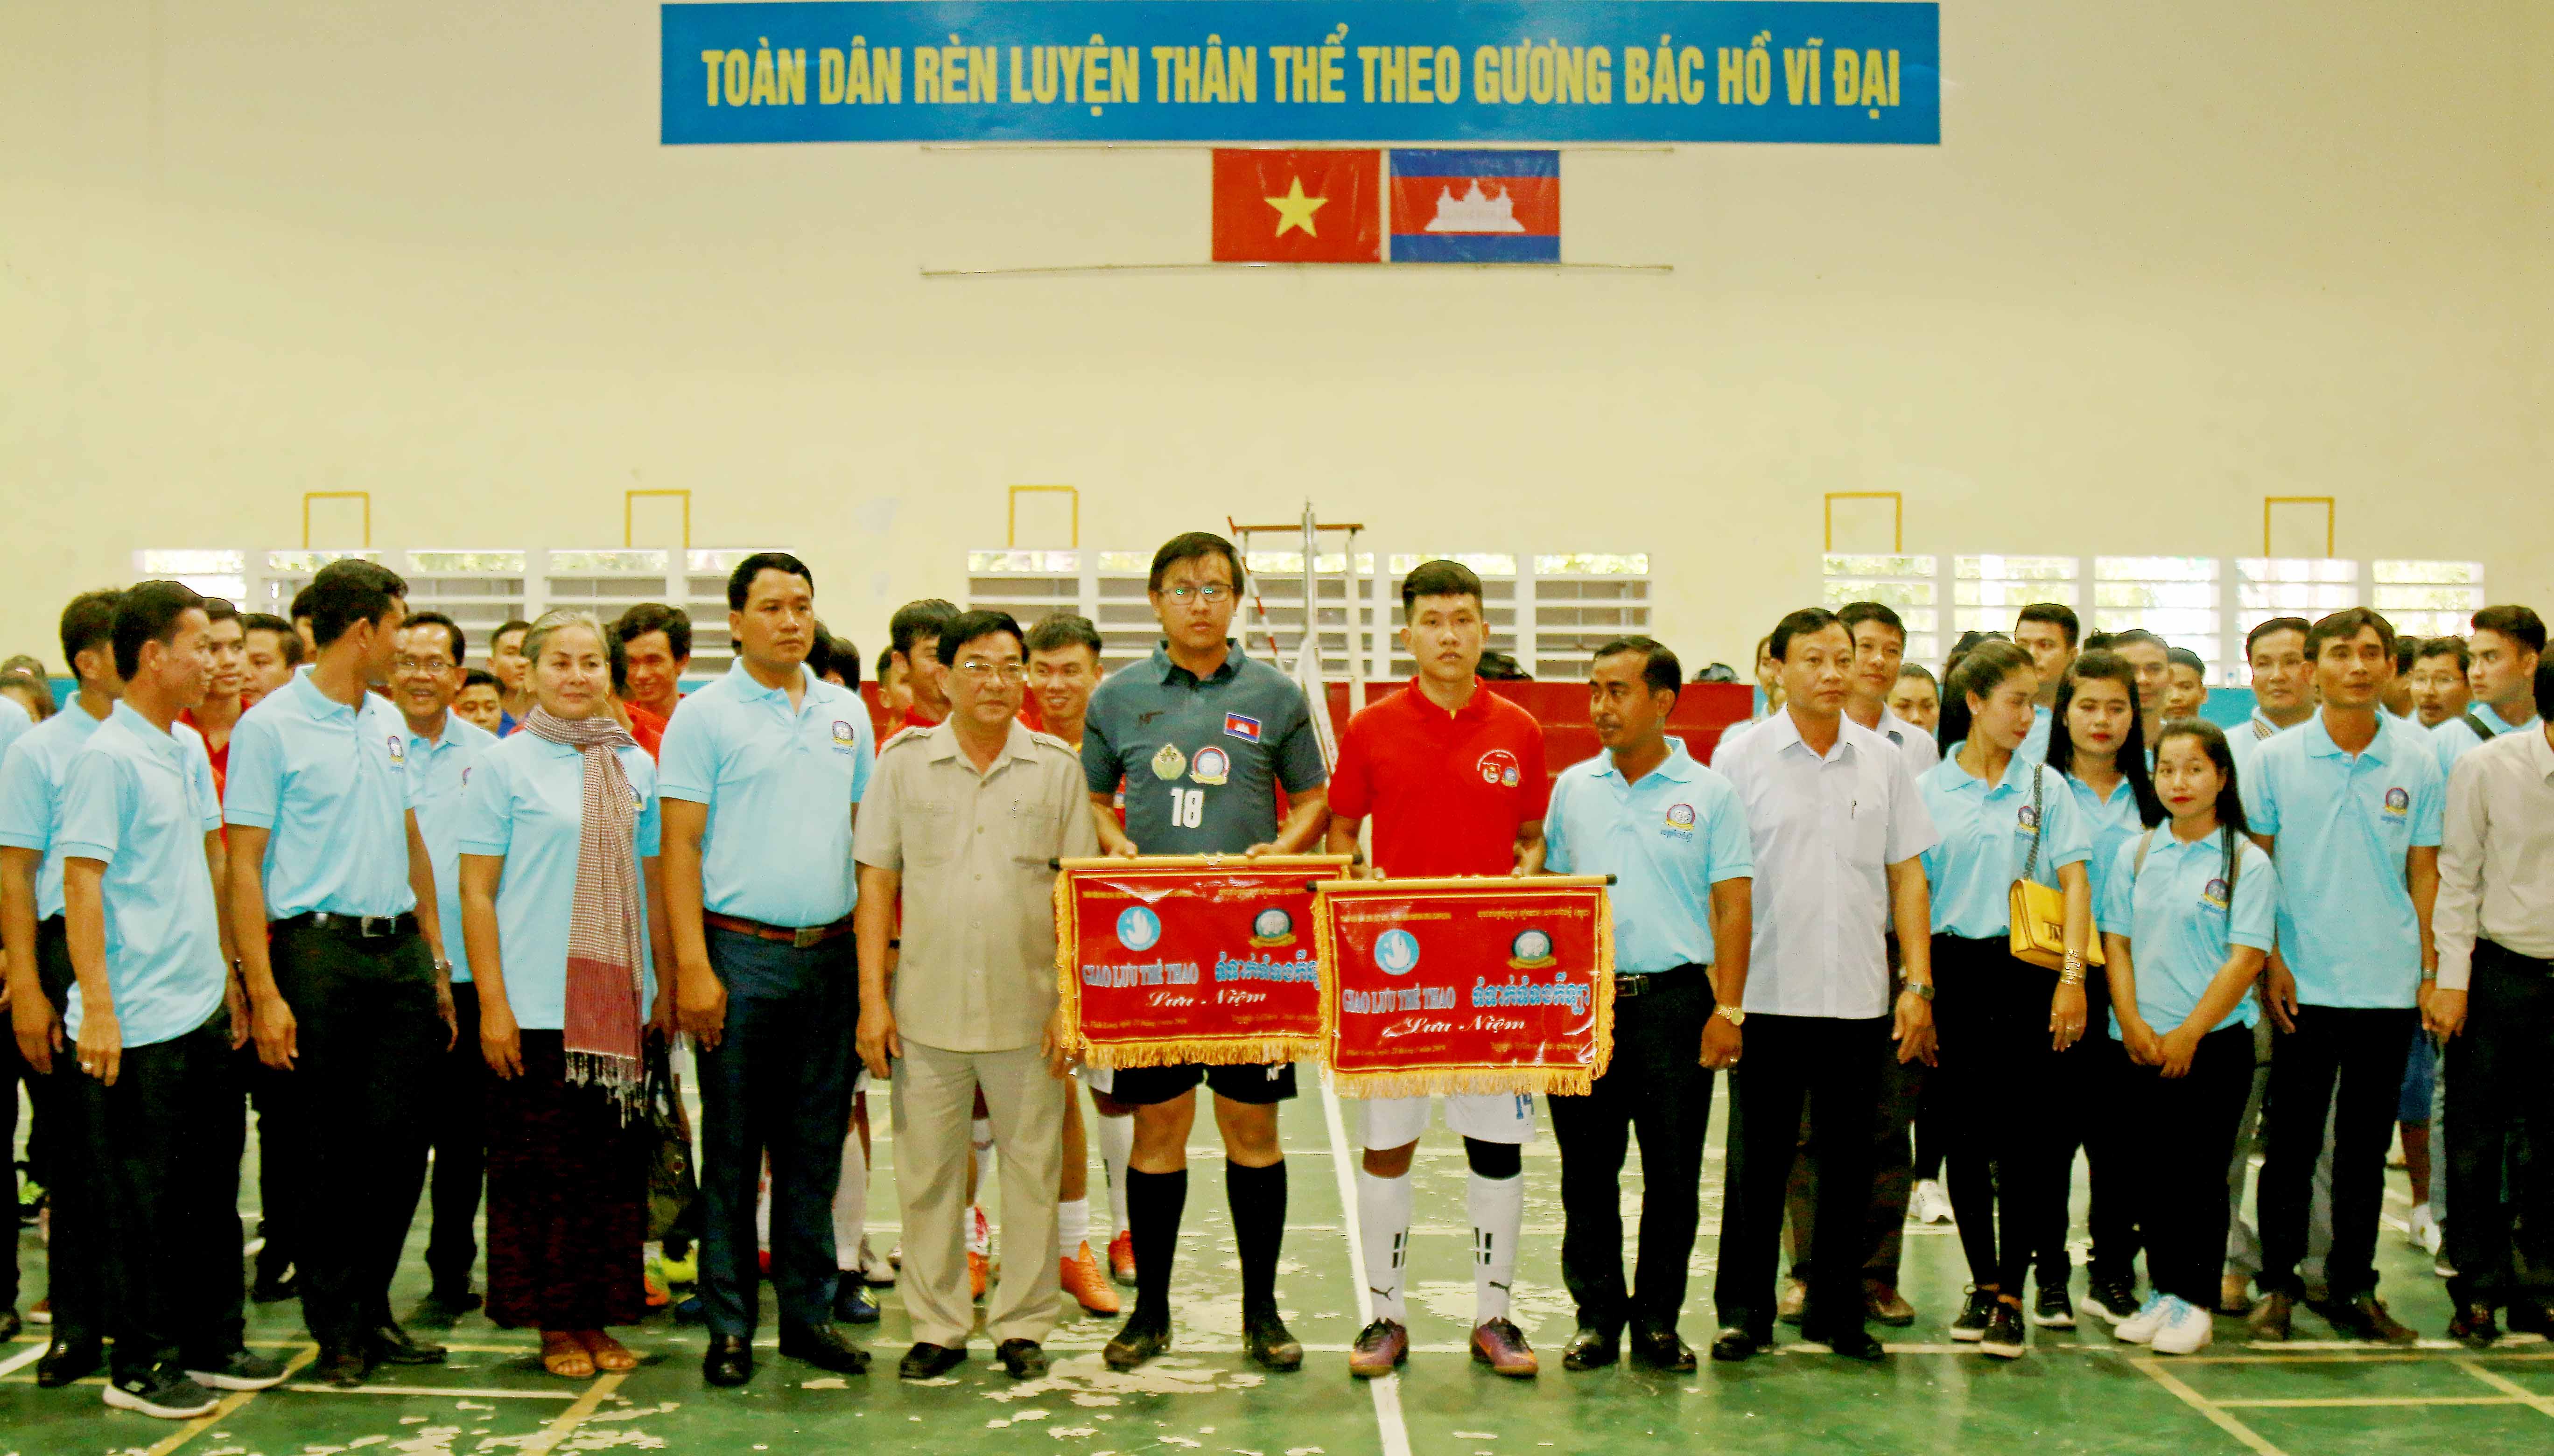 Giao lưu thể thao thanh niên tỉnh Kampong Speu (Campuchia) với Vĩnh Long